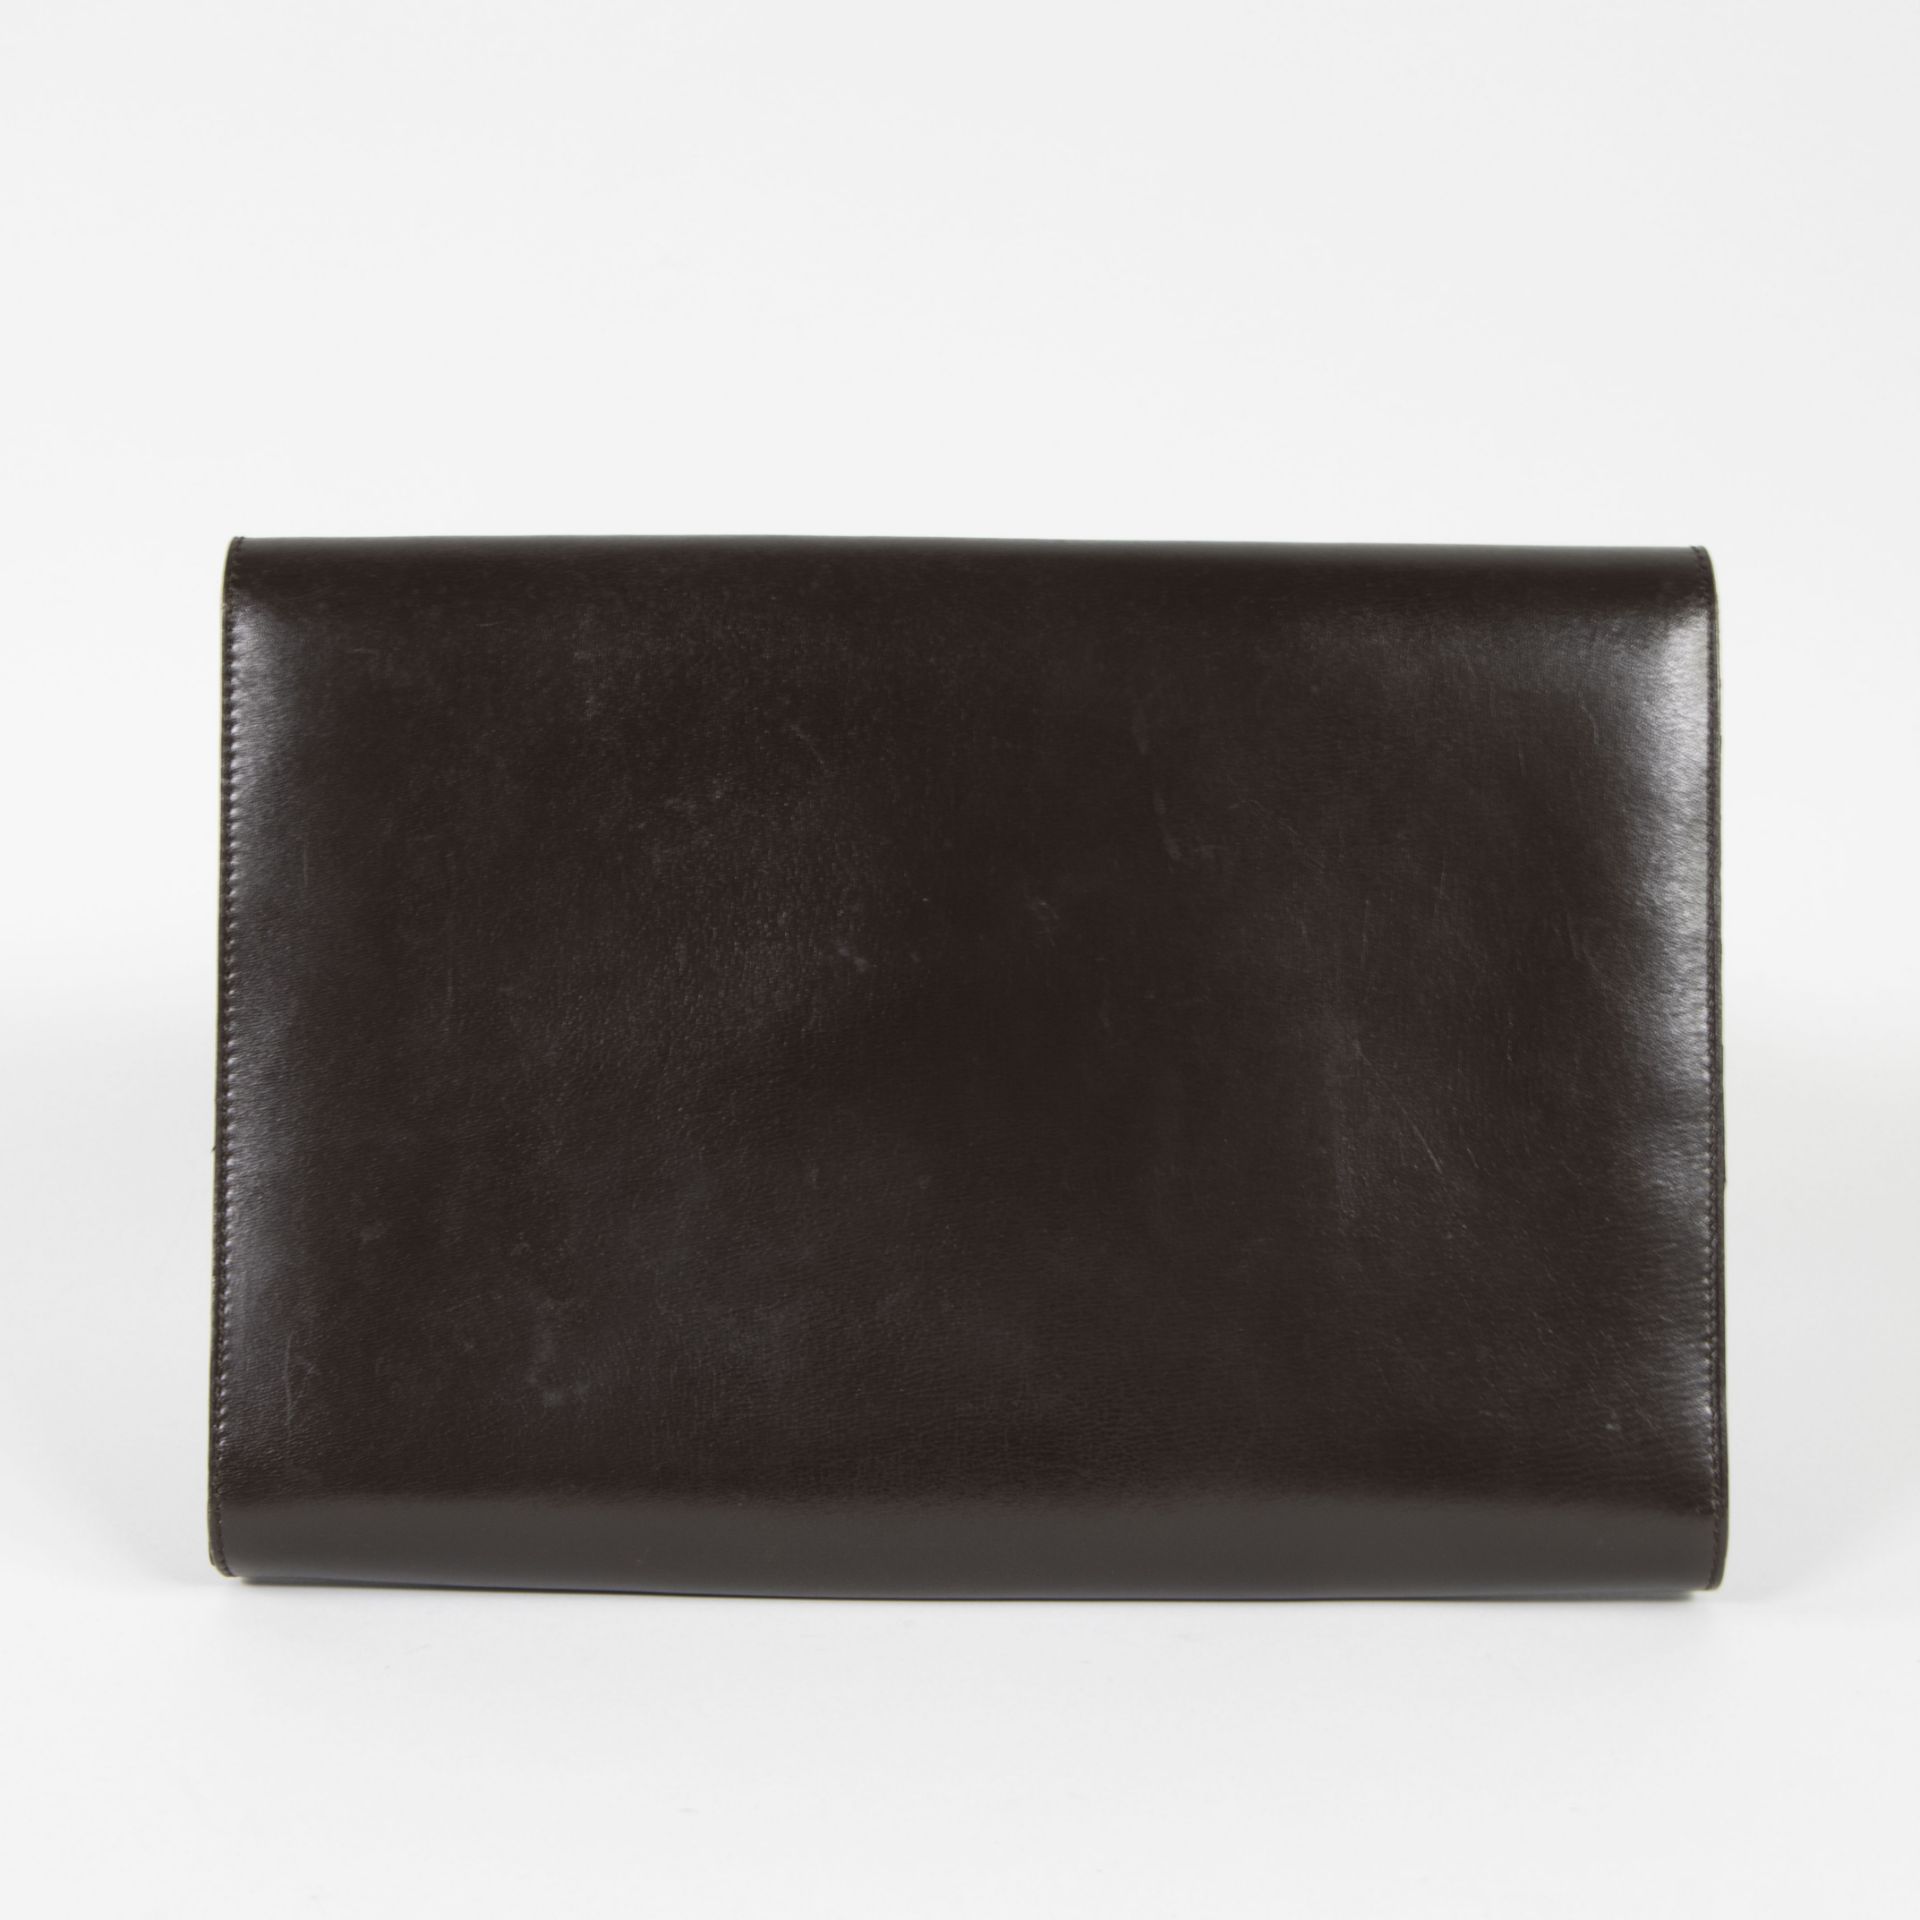 Lot Devaux leather black/white handbag model Touquet and leather pochette - Bild 5 aus 10